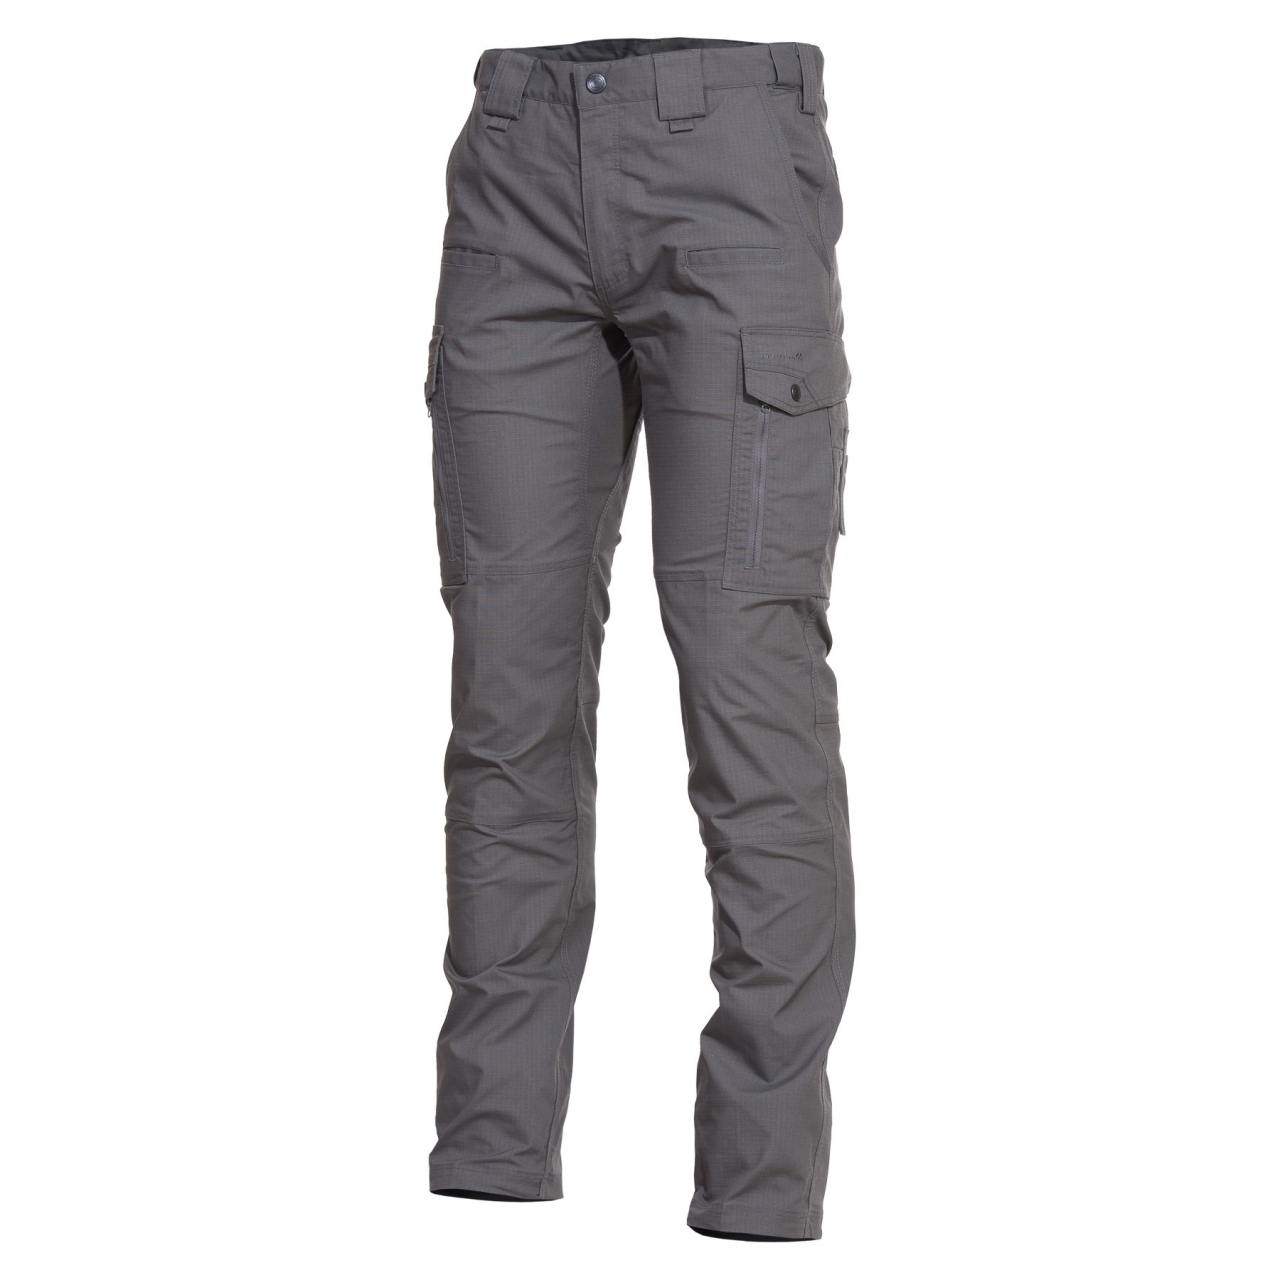 Kalhoty Pentagon Ranger 2.0 - šedé, 52 XL